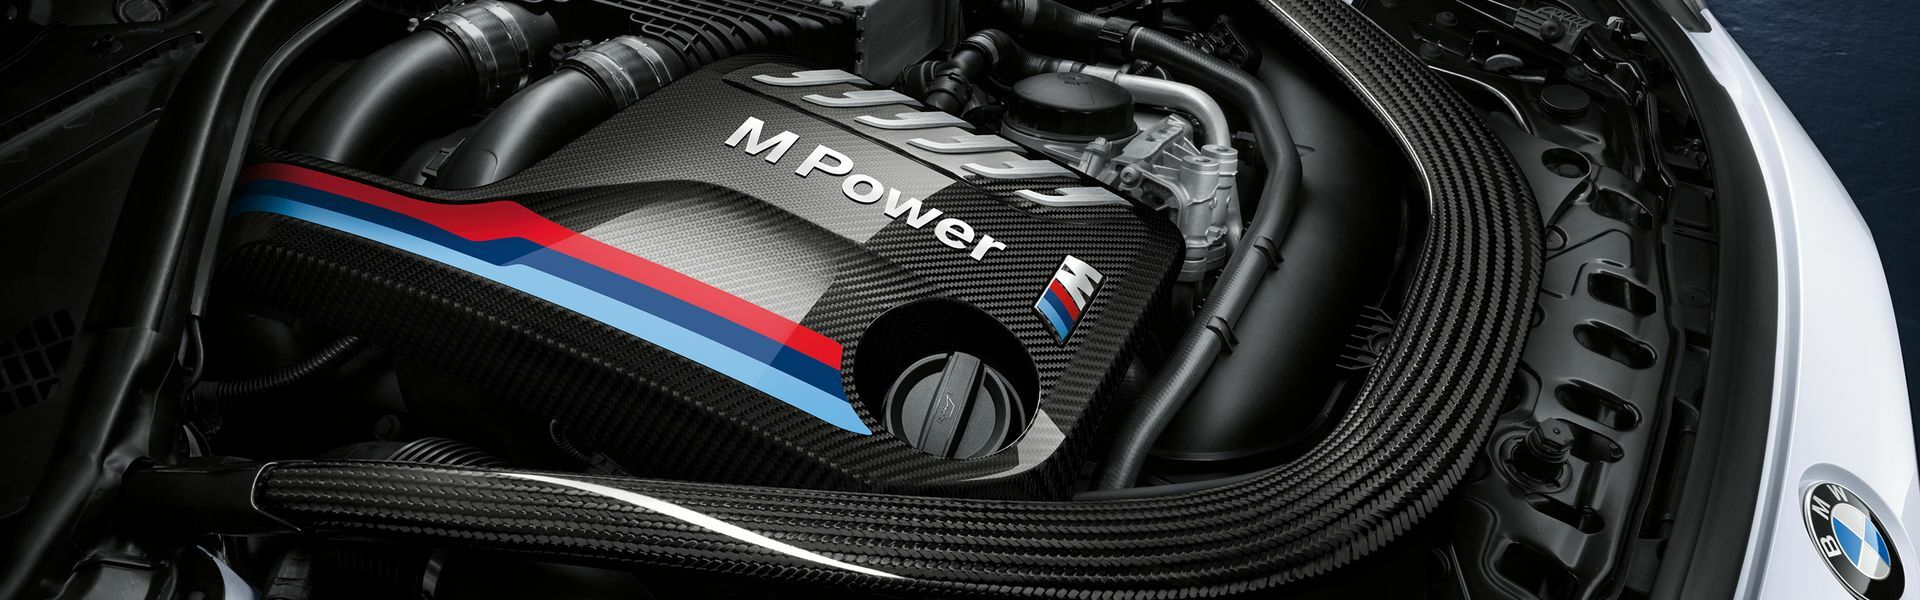 Zvýšení výkonu/ Softwarové úpravy/ Drobné performance díly pro automobil Porsche 718 Cayman GTS 4.0 / Boxster GTS 4.0